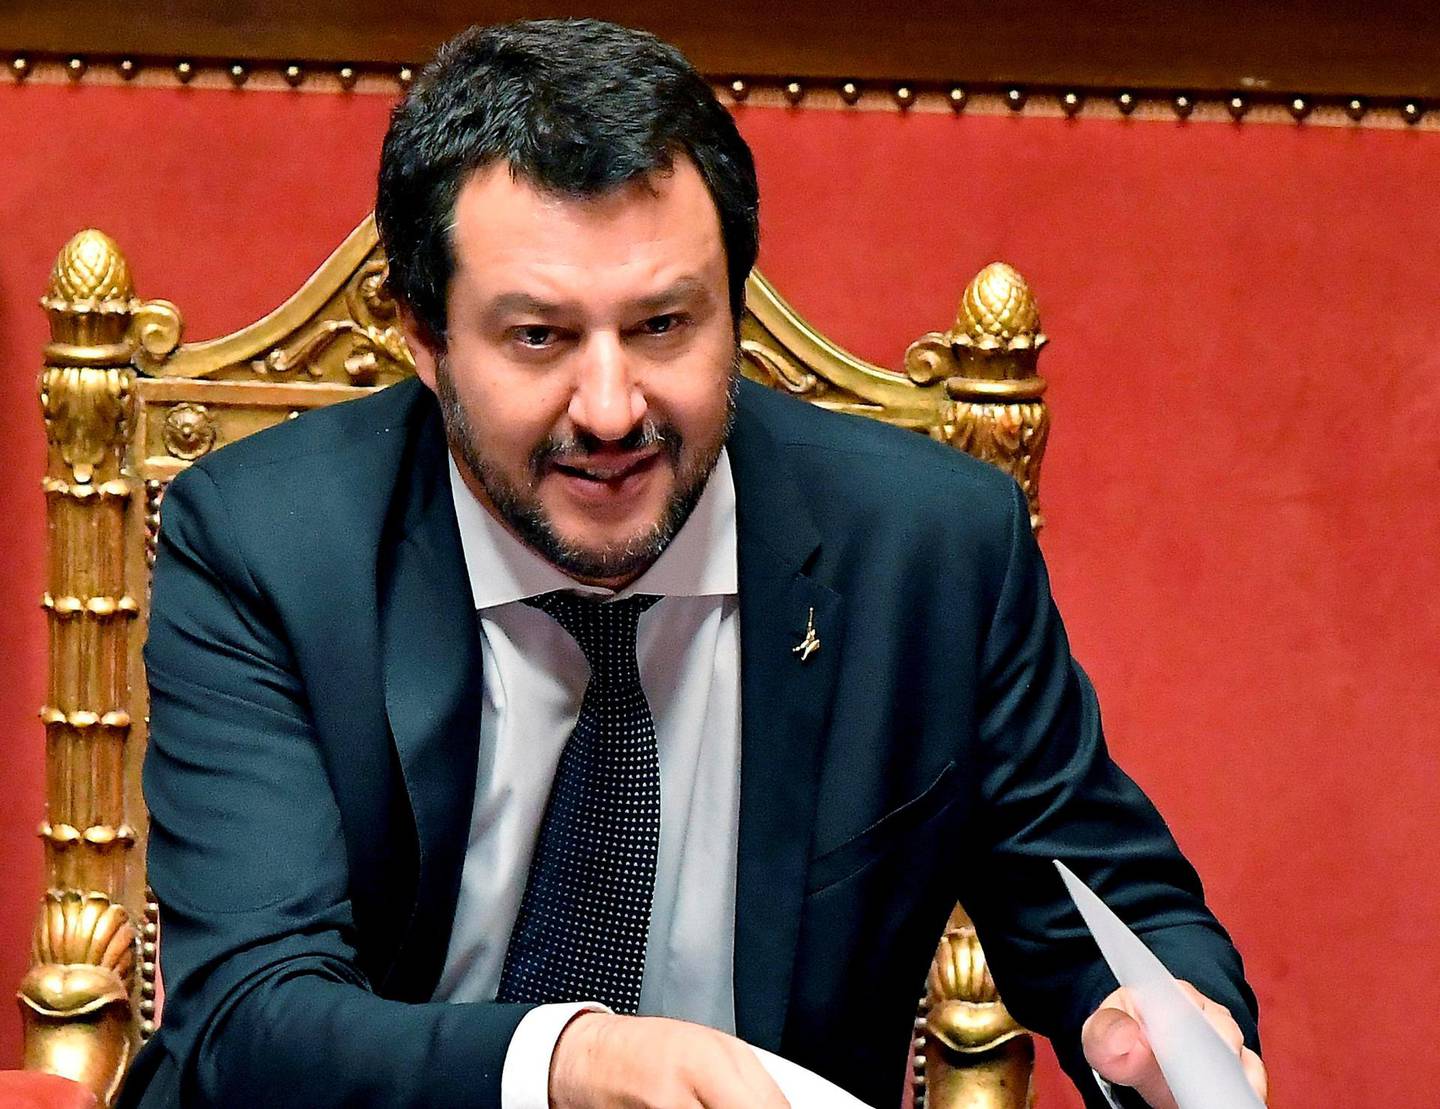 Italias visestatsminister og innenriksminister Matteo Salvini (46) er også leder for det høyrenasjonalistiske partiet Lega Nord. Han har karakterisert «Sea-Watch 3» som menneskesmuglere, og har fått innført en politikk som gjør det ulovlig for private redningsfartøy å legge til kai i Italia. FOTO: ETTORE FERRARI/ANSA/AP/NTB SCANPIX